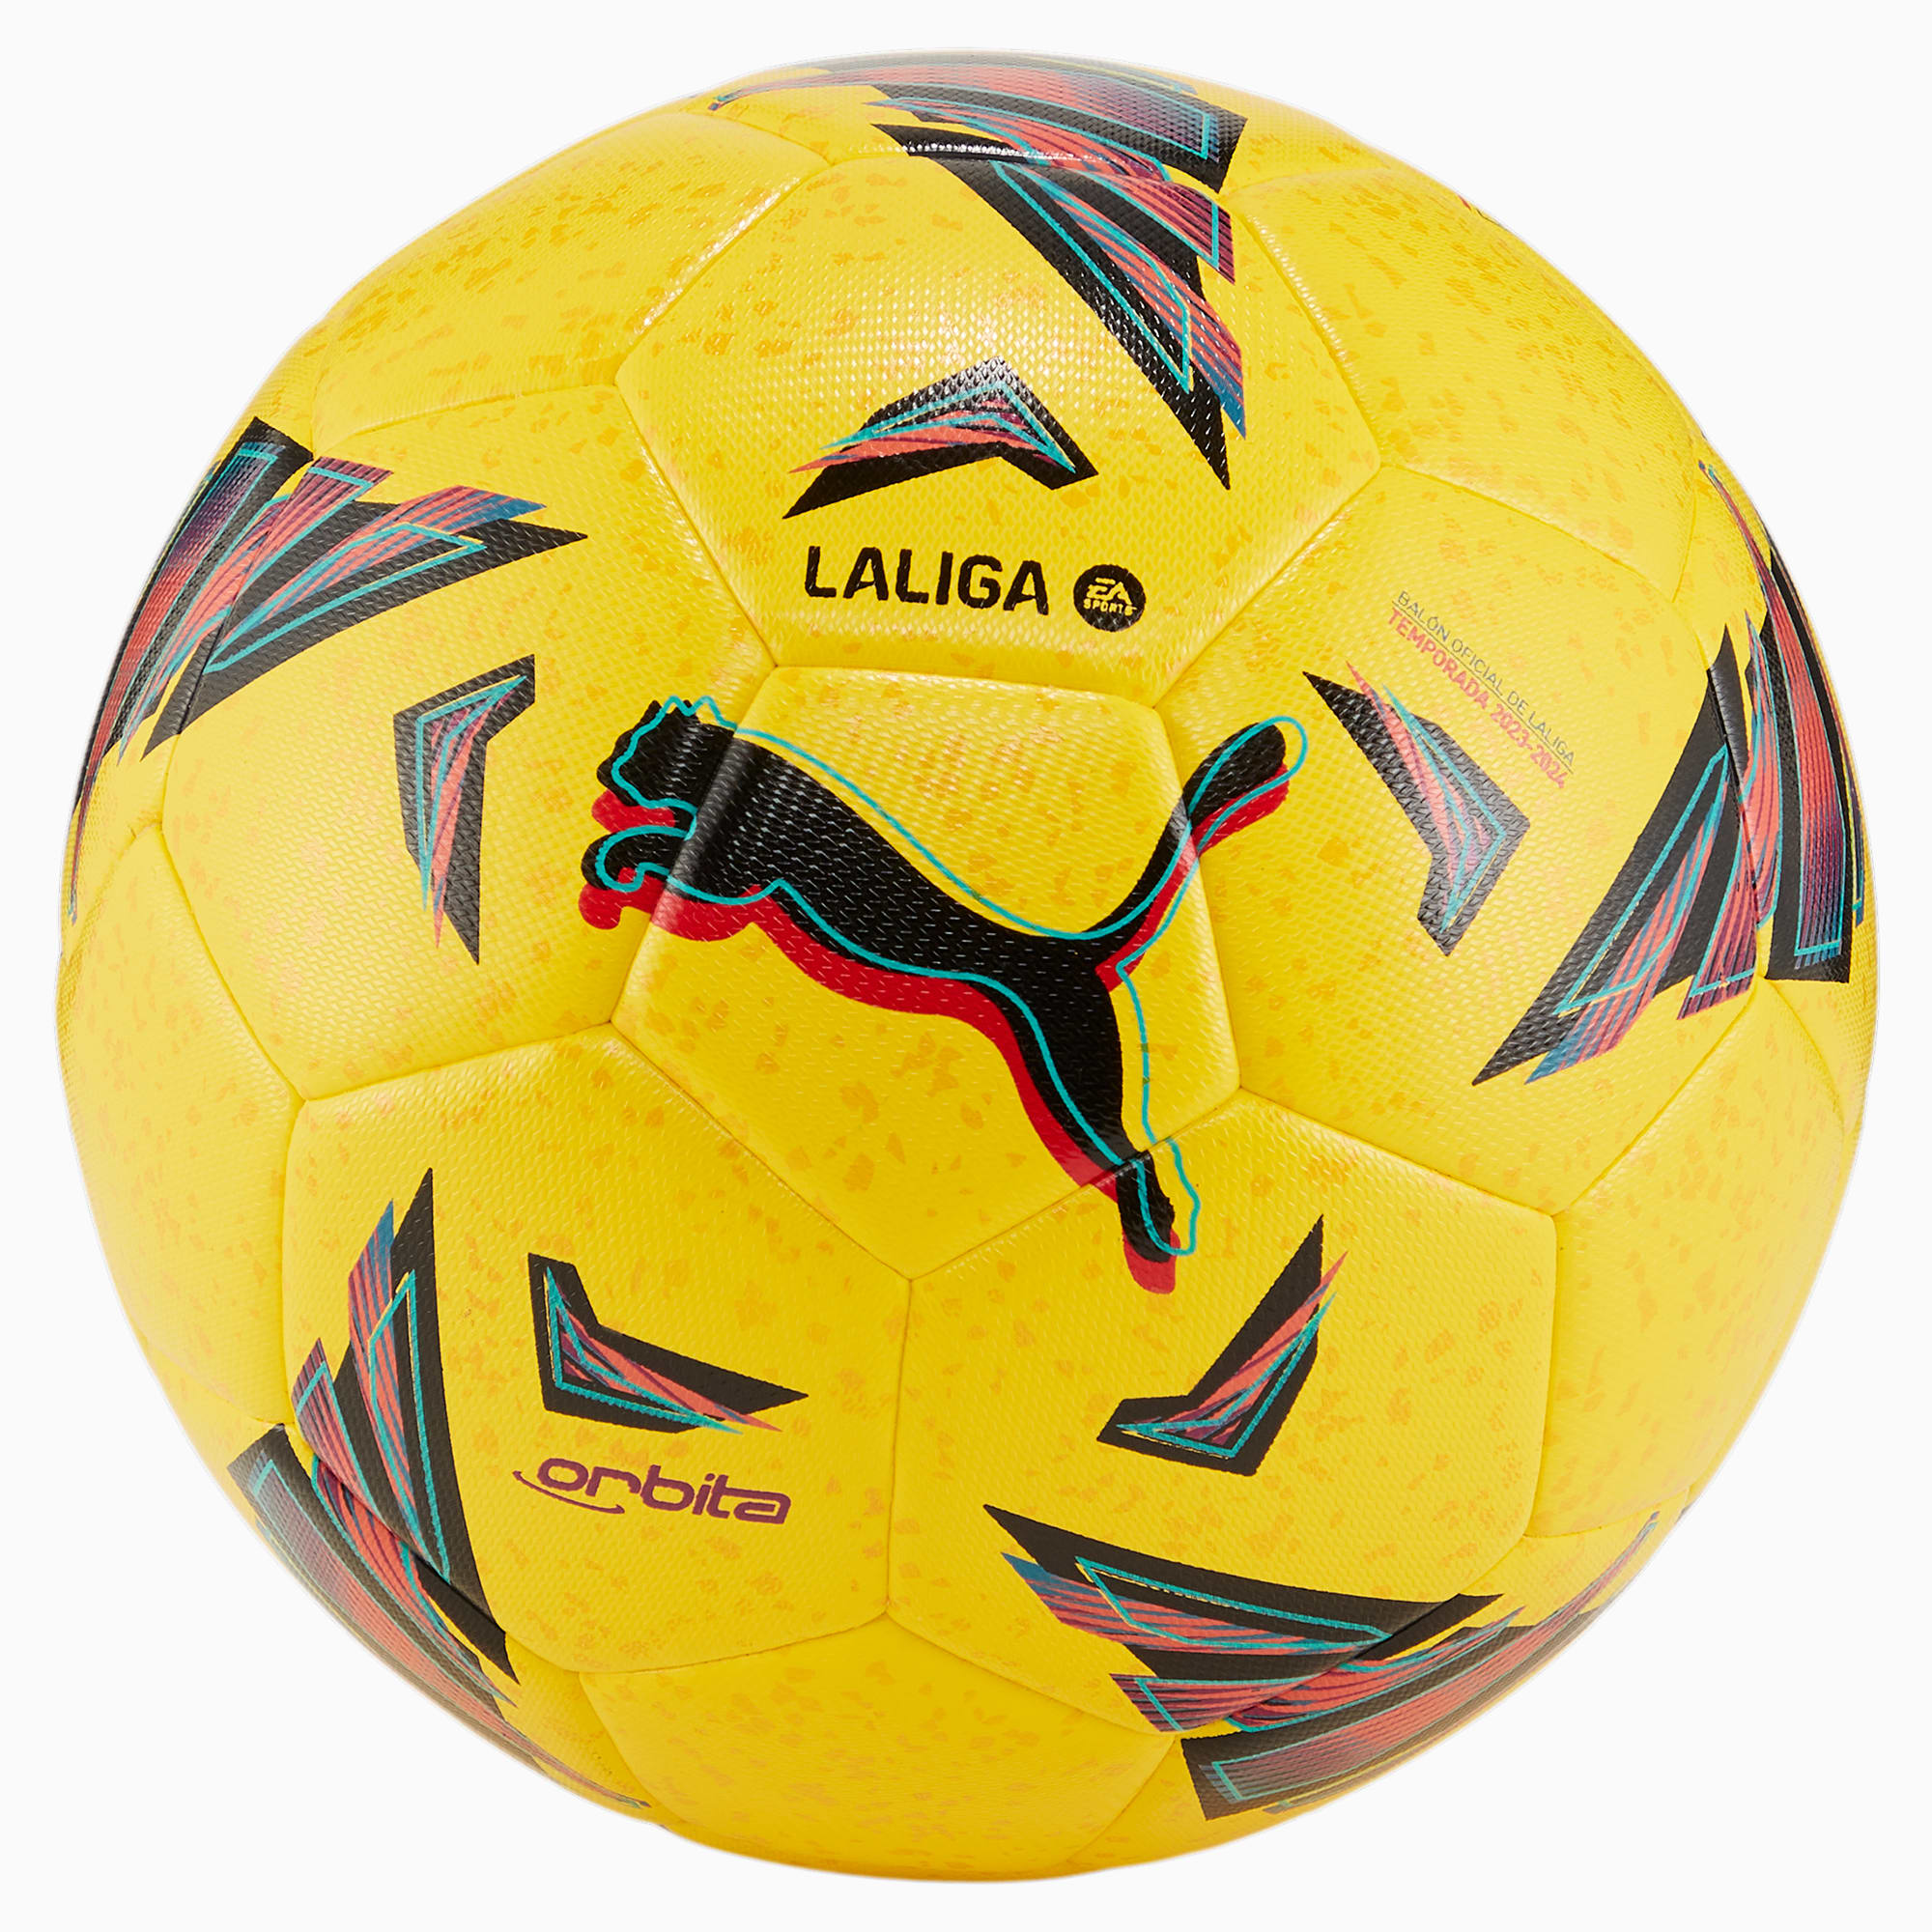 PUMA Orbita LaLiga Hybrid Trainingsfußball, Gelb, Größe: 4